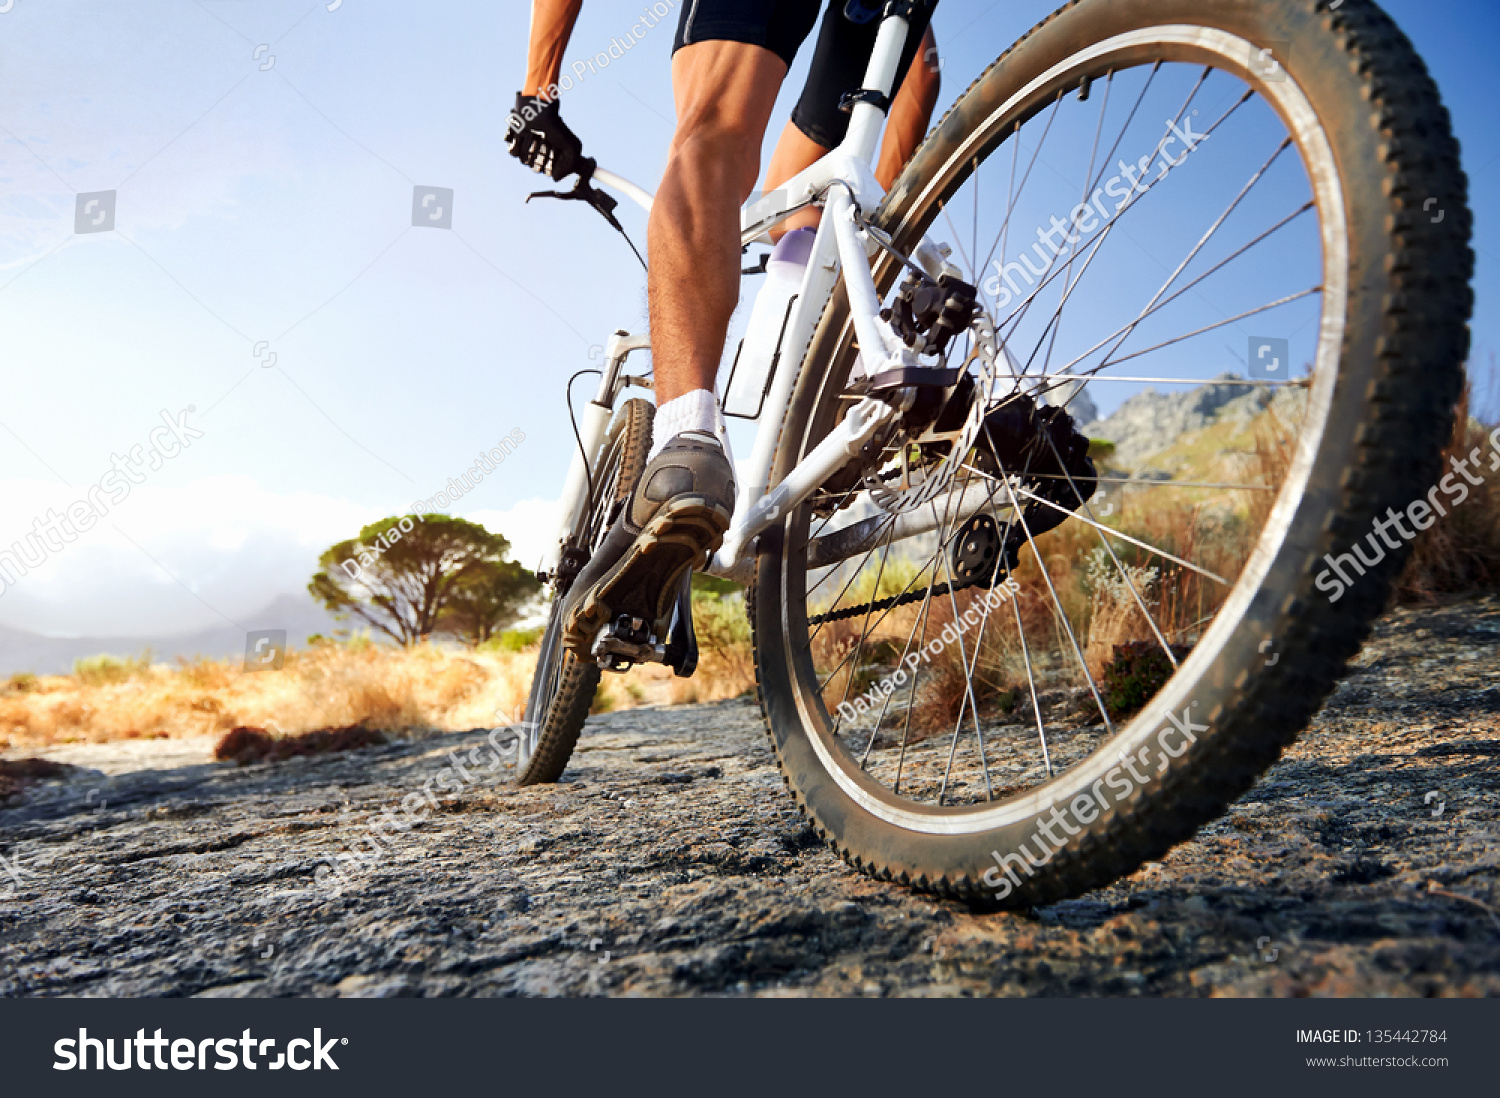 Extreme mountain bike sport athlete man riding outdoors lifestyle trail #135442784